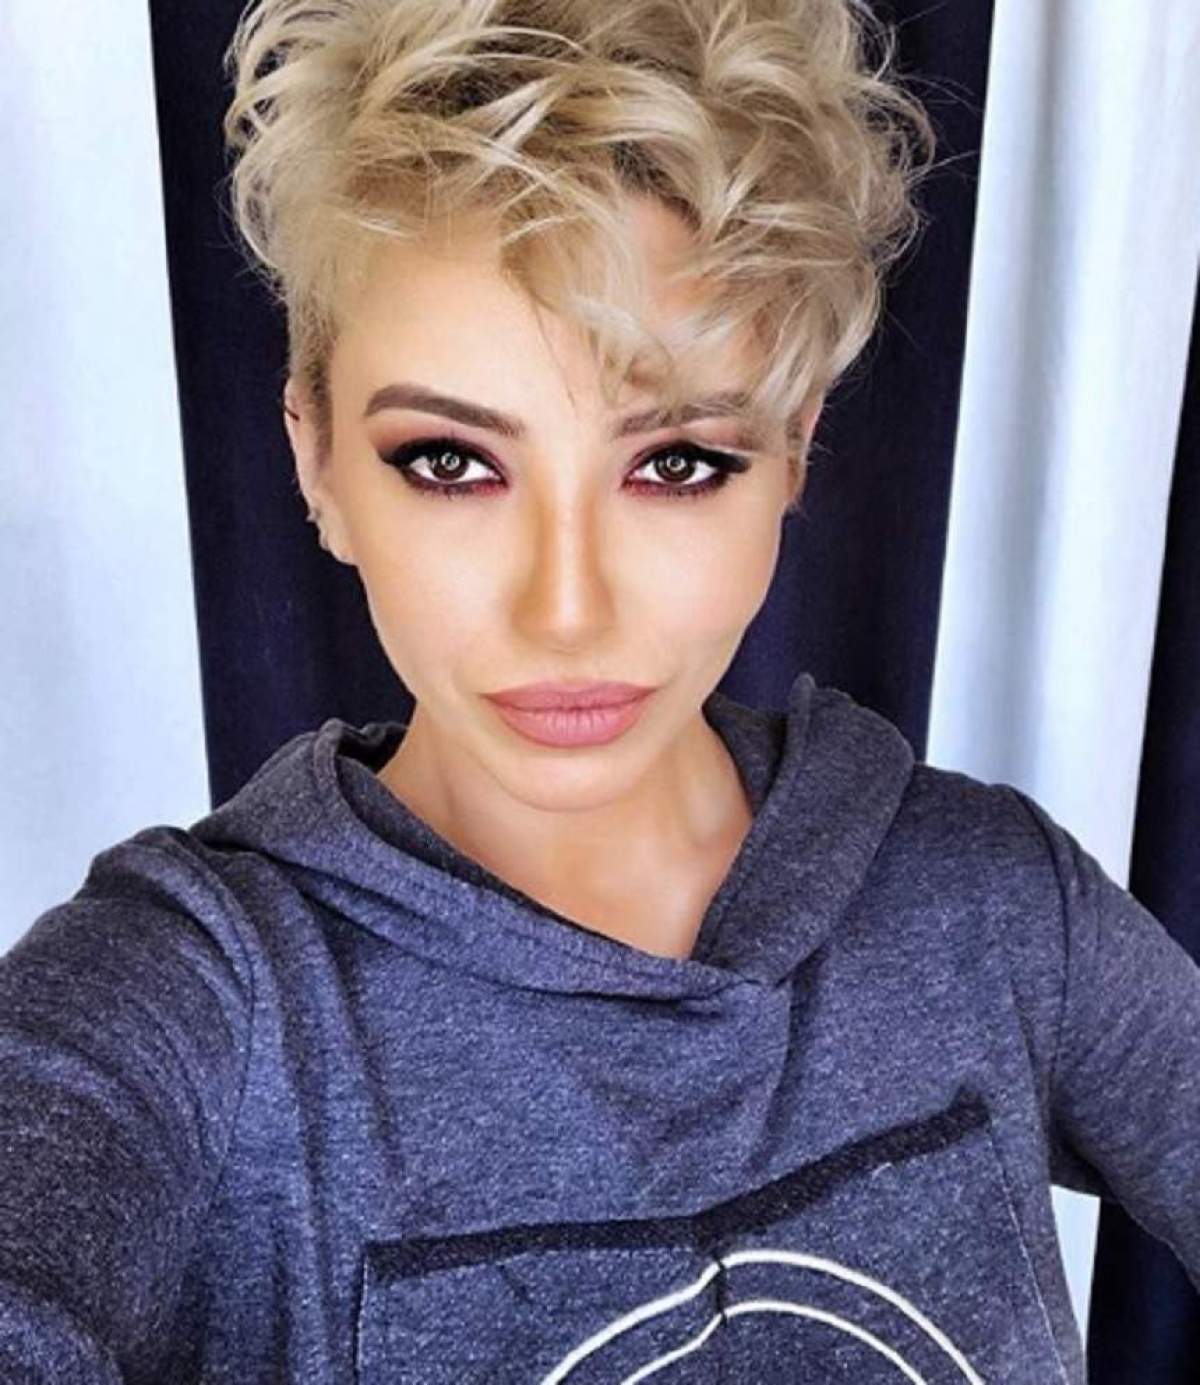 Giulia Anghelescu și-a făcut un selfie, în bluza albastră, tunsă scurt, blondă și foarte machiată